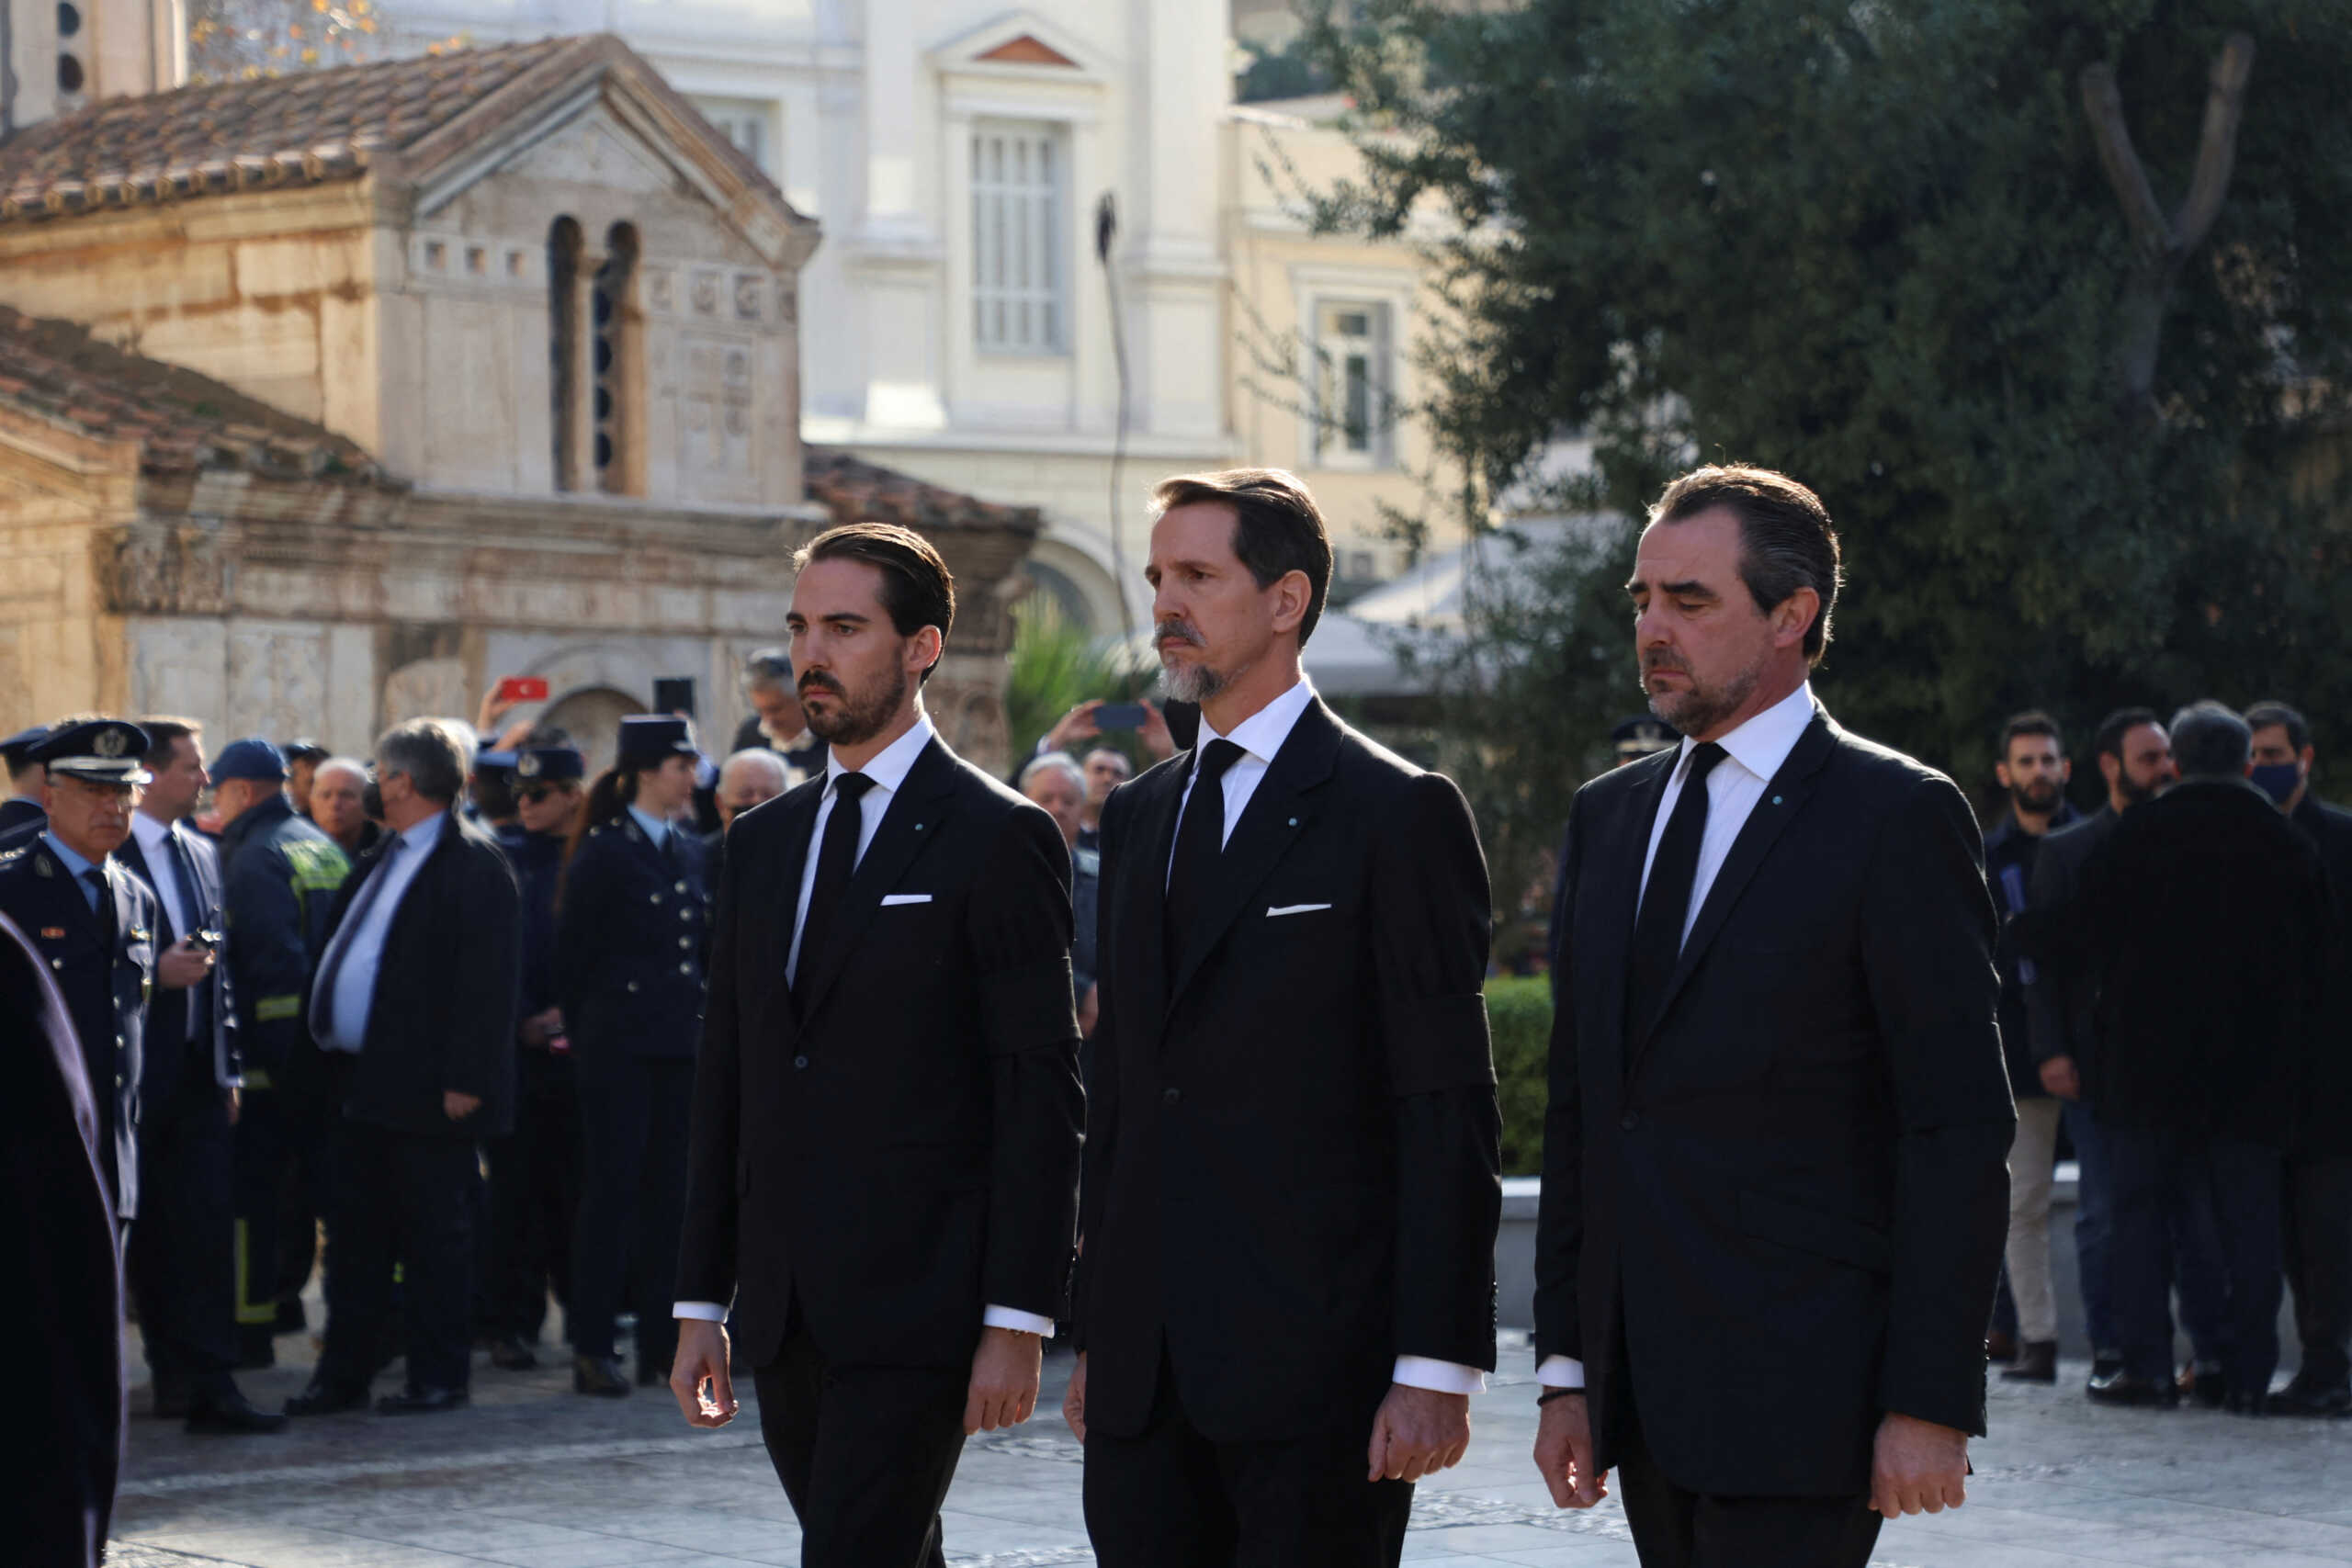 Κηδεία τέως βασιλιά Κωνσταντίνου: Οι γαλαζοαίματοι και οι πολιτικοί που βρέθηκαν στην Μητρόπολη